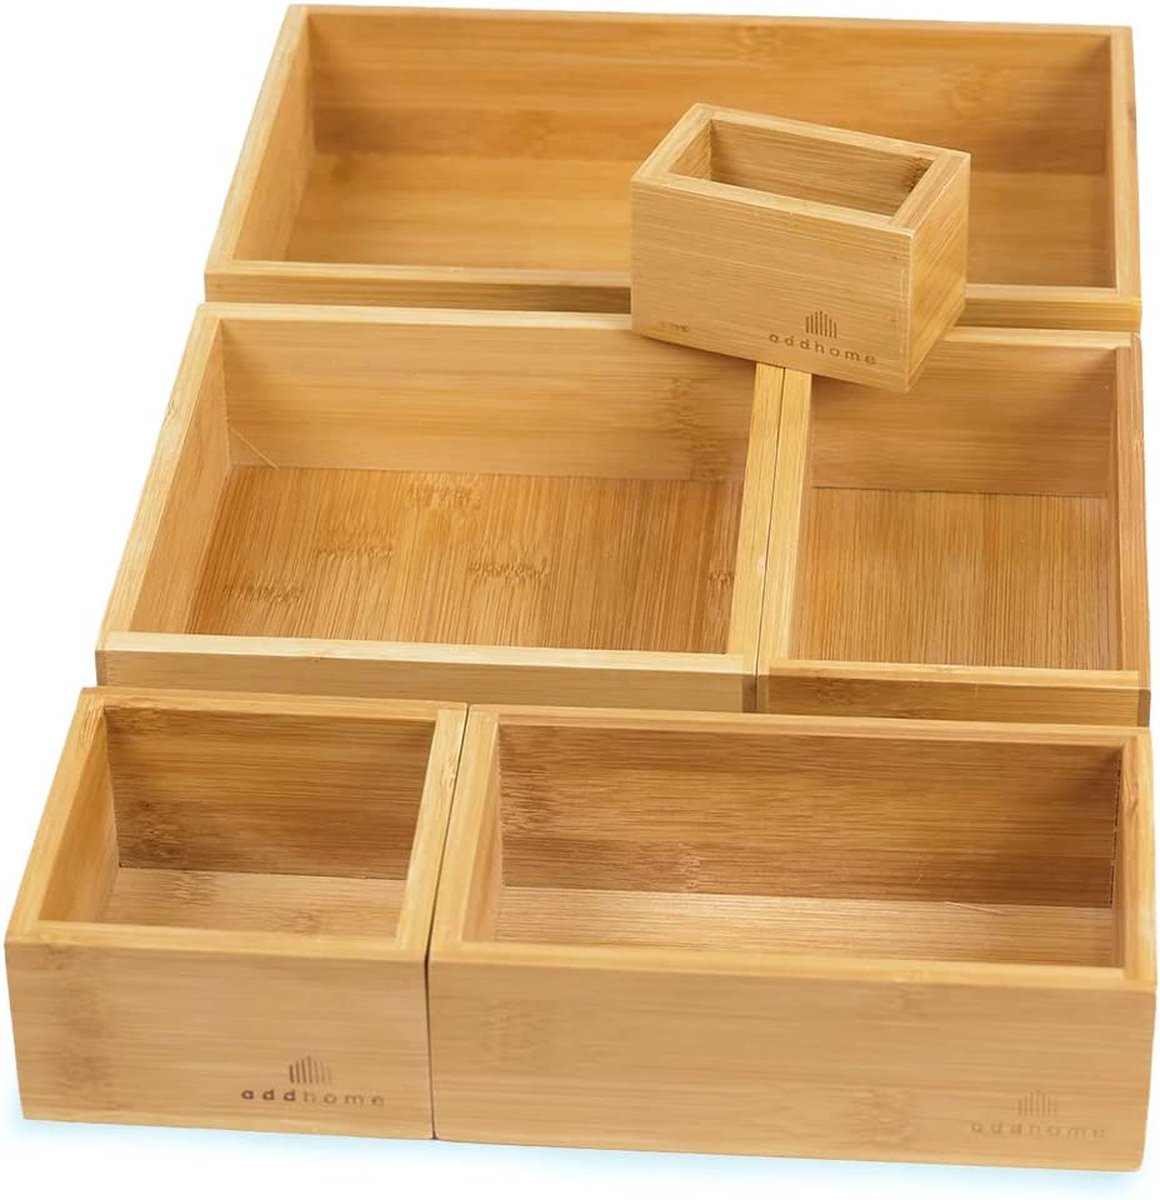 Lade-organisatiesysteem | 6 houten kisten voor lade | Organisatoren | Bamboe sorteerdozen voor make-up, keuken, badkamer, kantoor